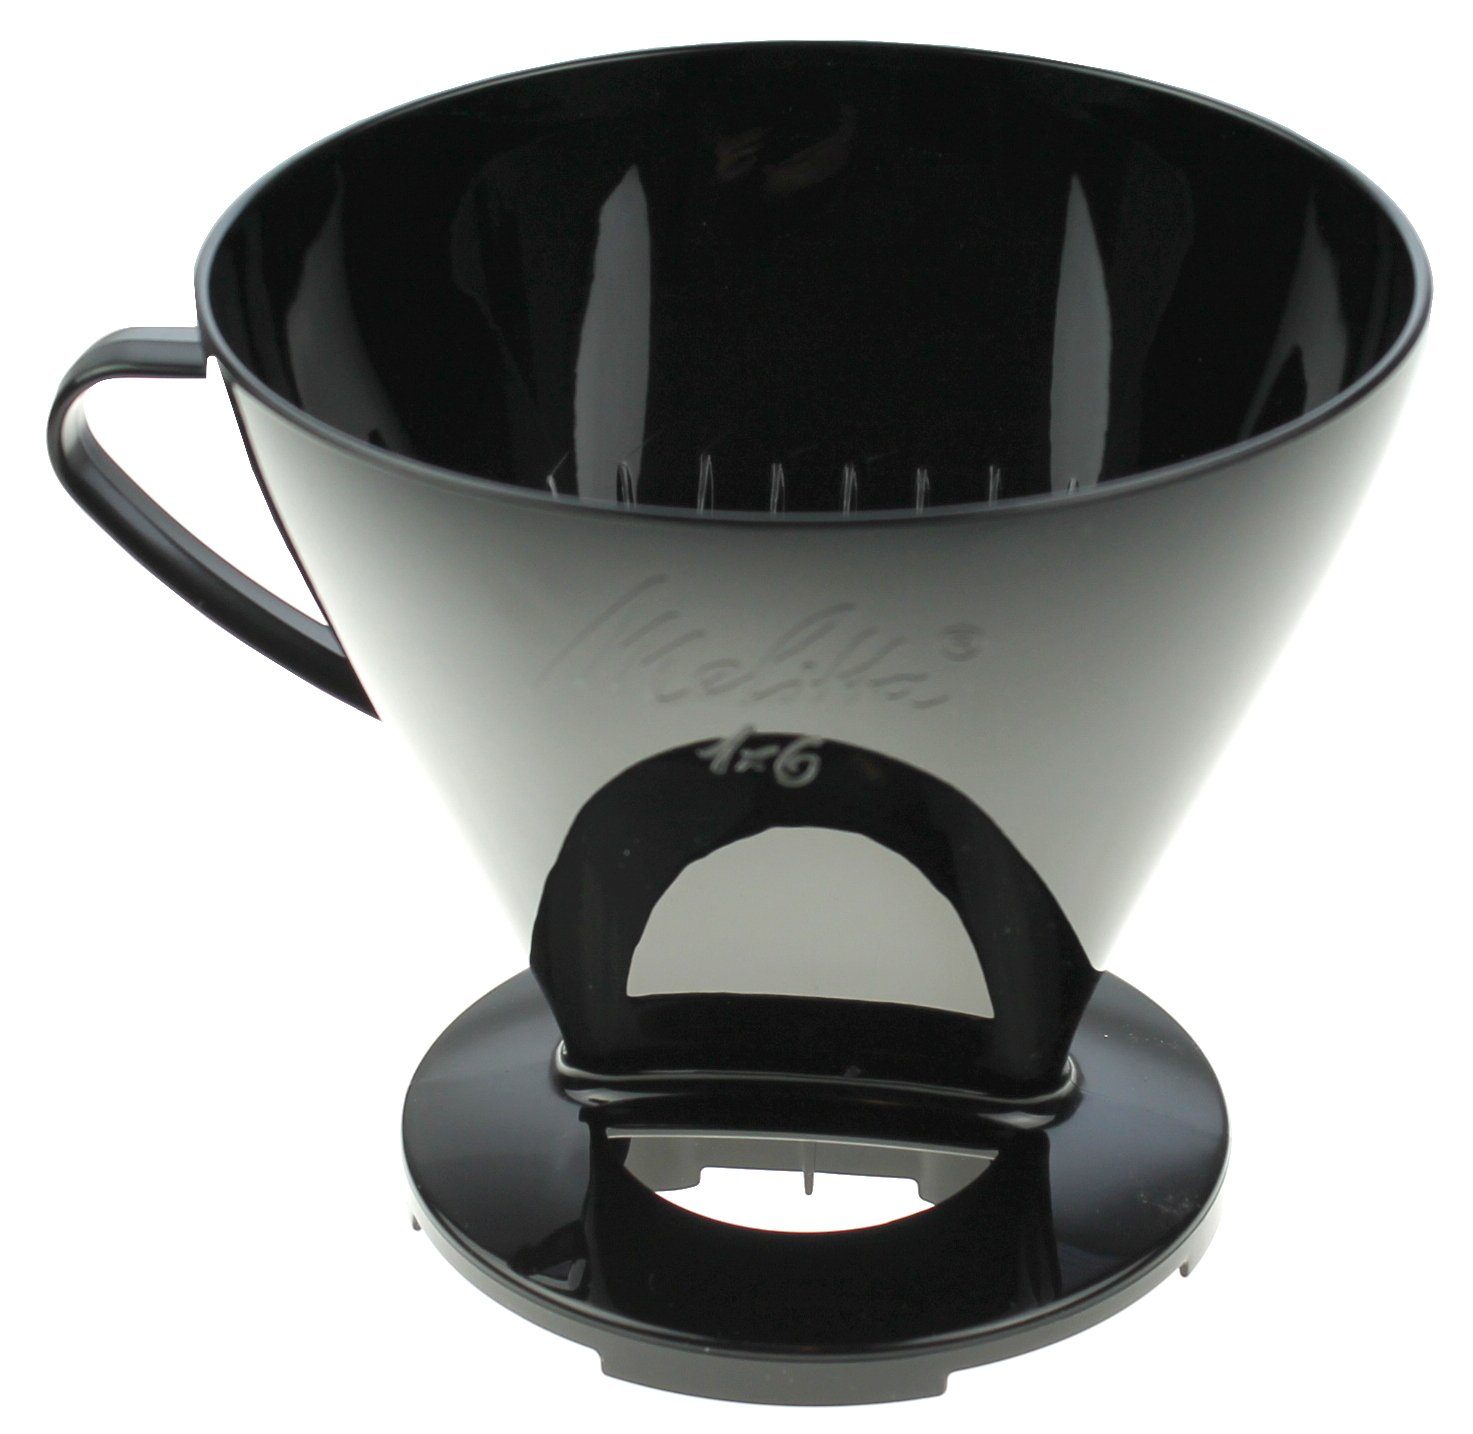 Melitta Filterkaffeemaschine Melitta 6761019 Kaffeefilter 1x6 schwarz zur manuellen Kaffeezubereitu